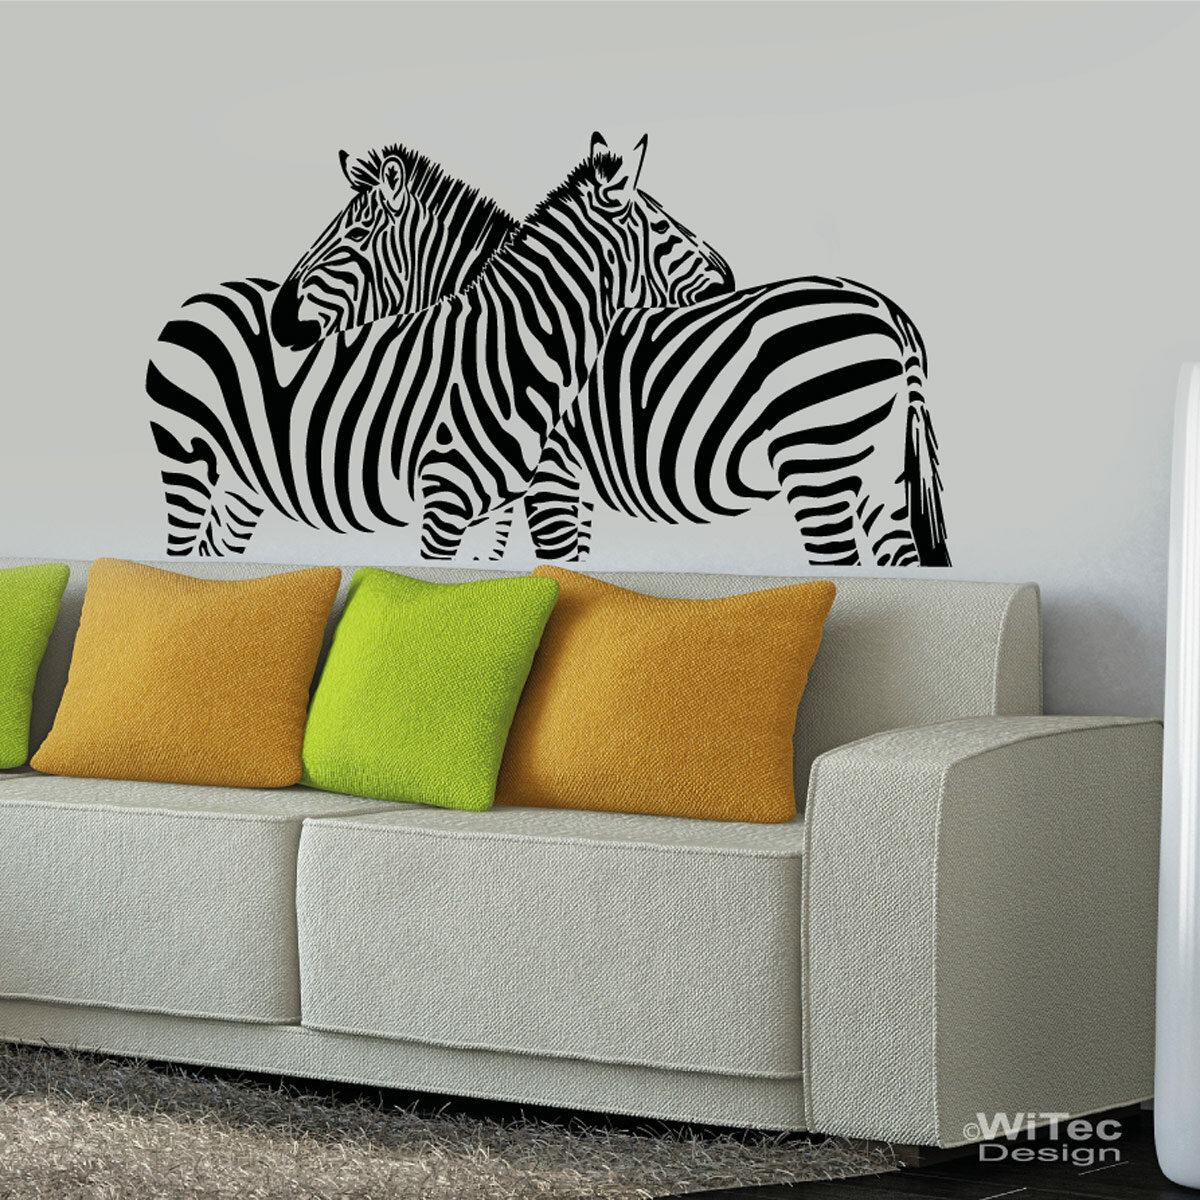 Wandtattoo Zebra Afrika Retro Wanddekoration Wandaufkleber Wandsticker